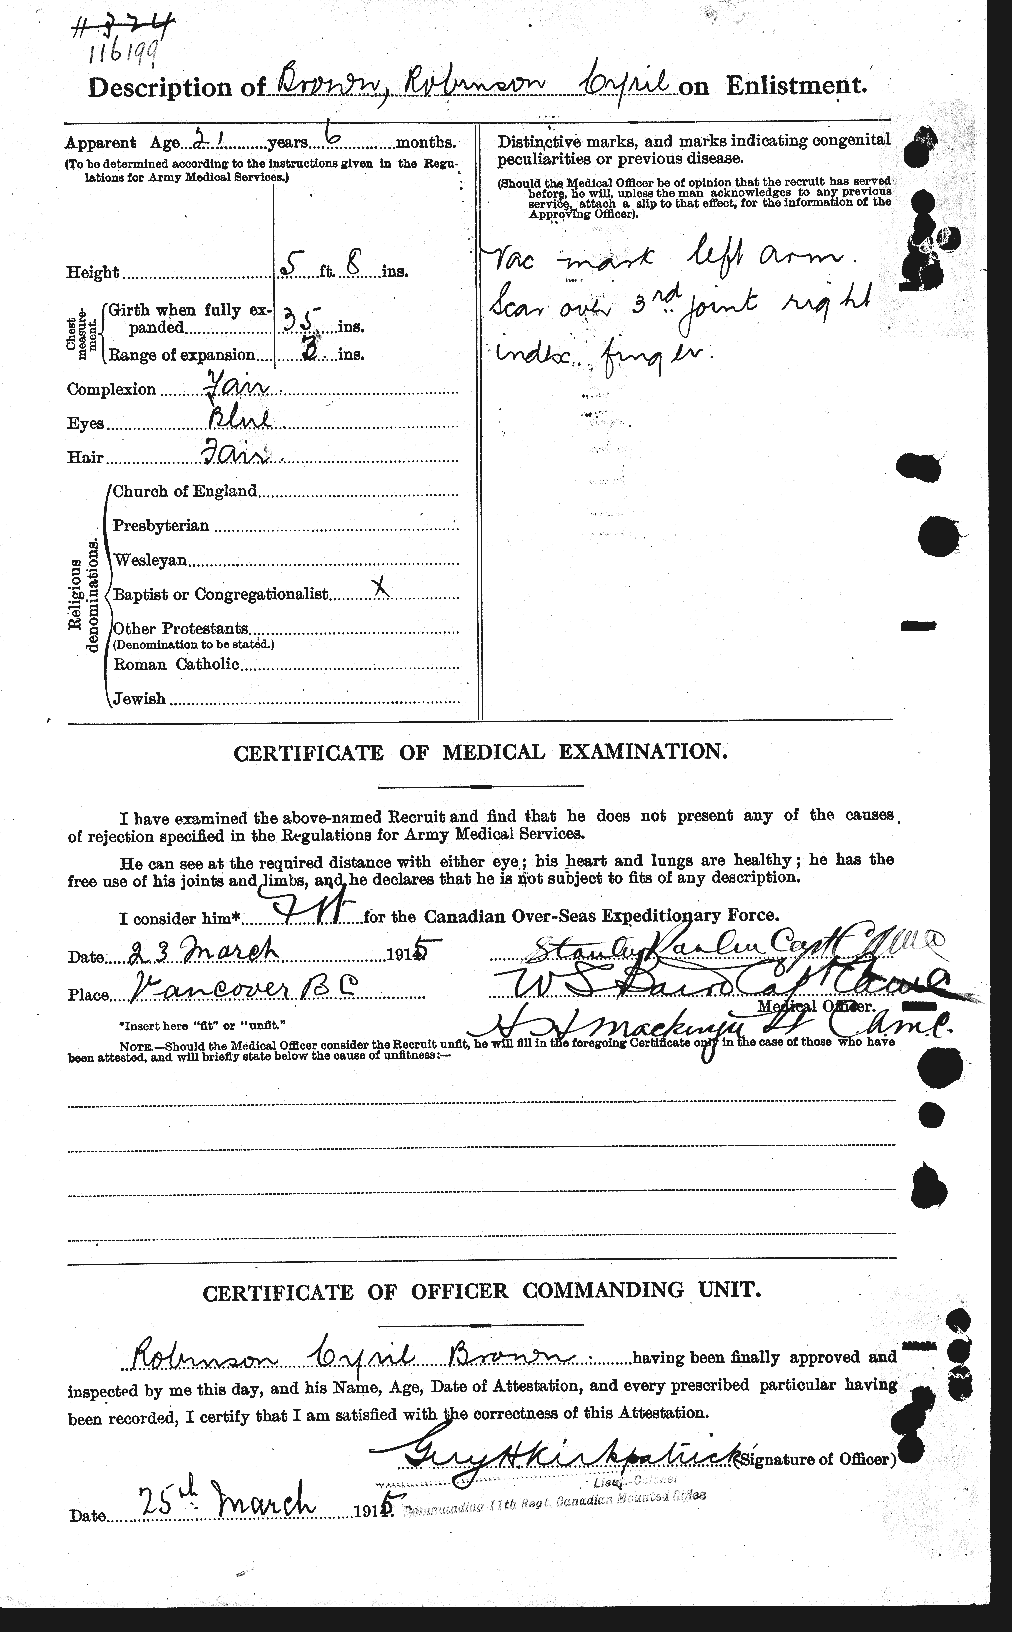 Dossiers du Personnel de la Première Guerre mondiale - CEC 265284b